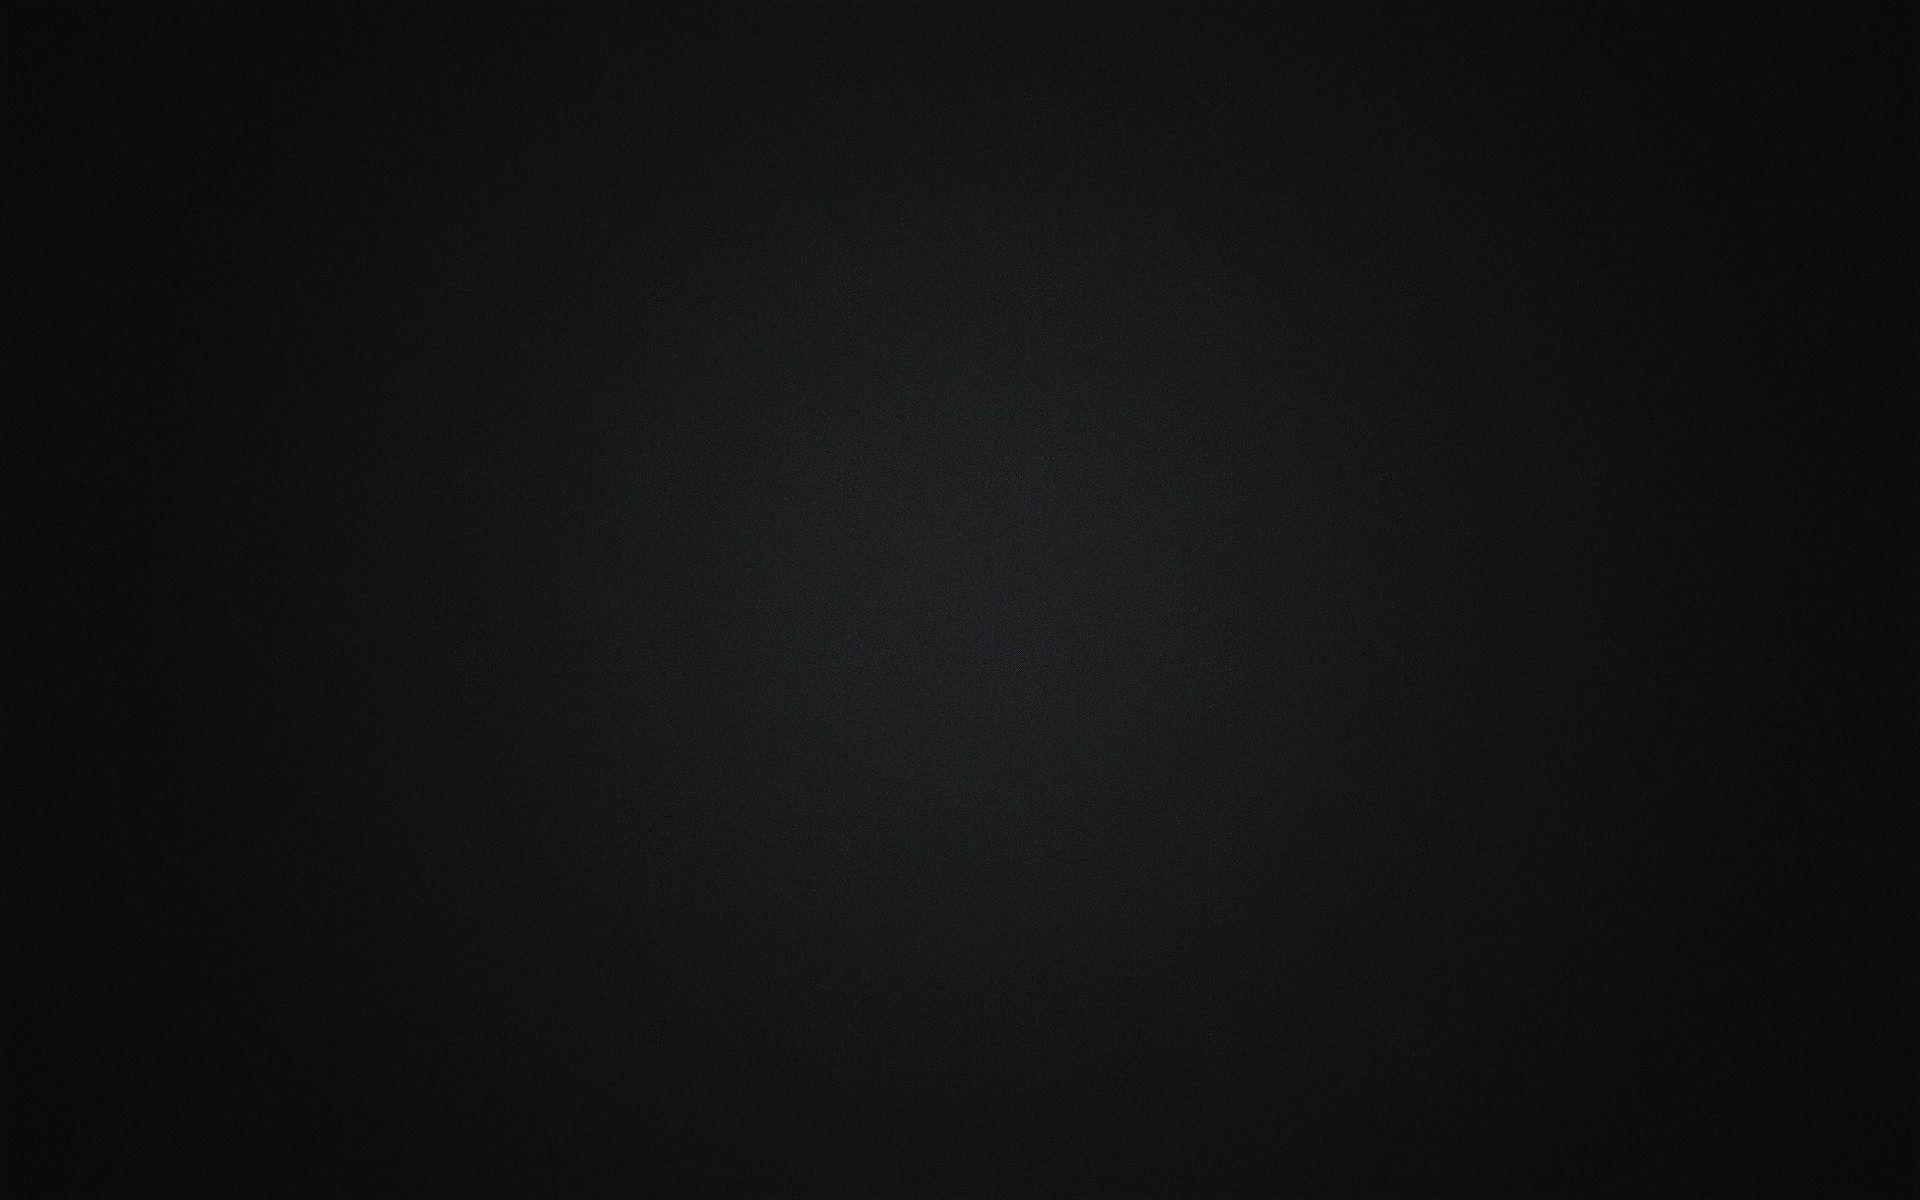 40 Gambar Solid Black Wallpaper Hd For Android Terbaru 2020 - Miuiku